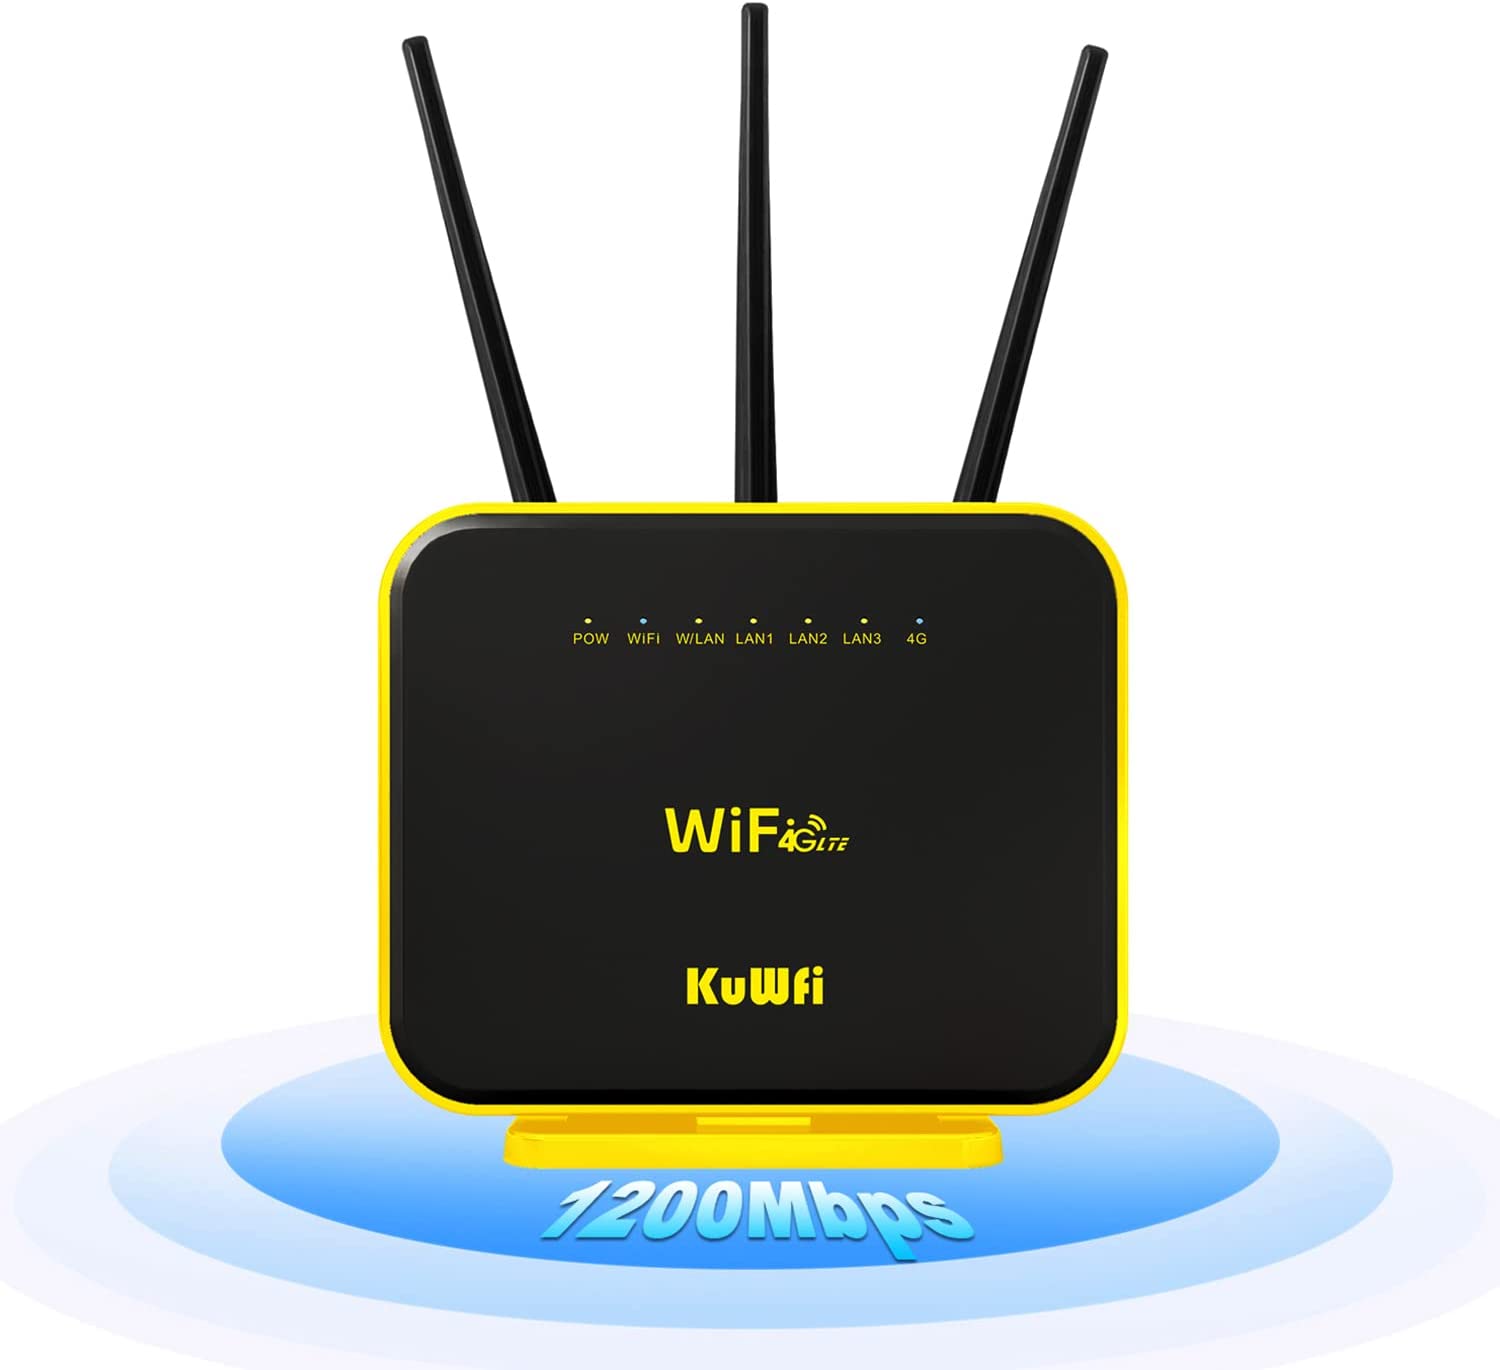 Kuwfi router gigabit 2.4ghz/5ghz 1200mbps wifi repeater vpn